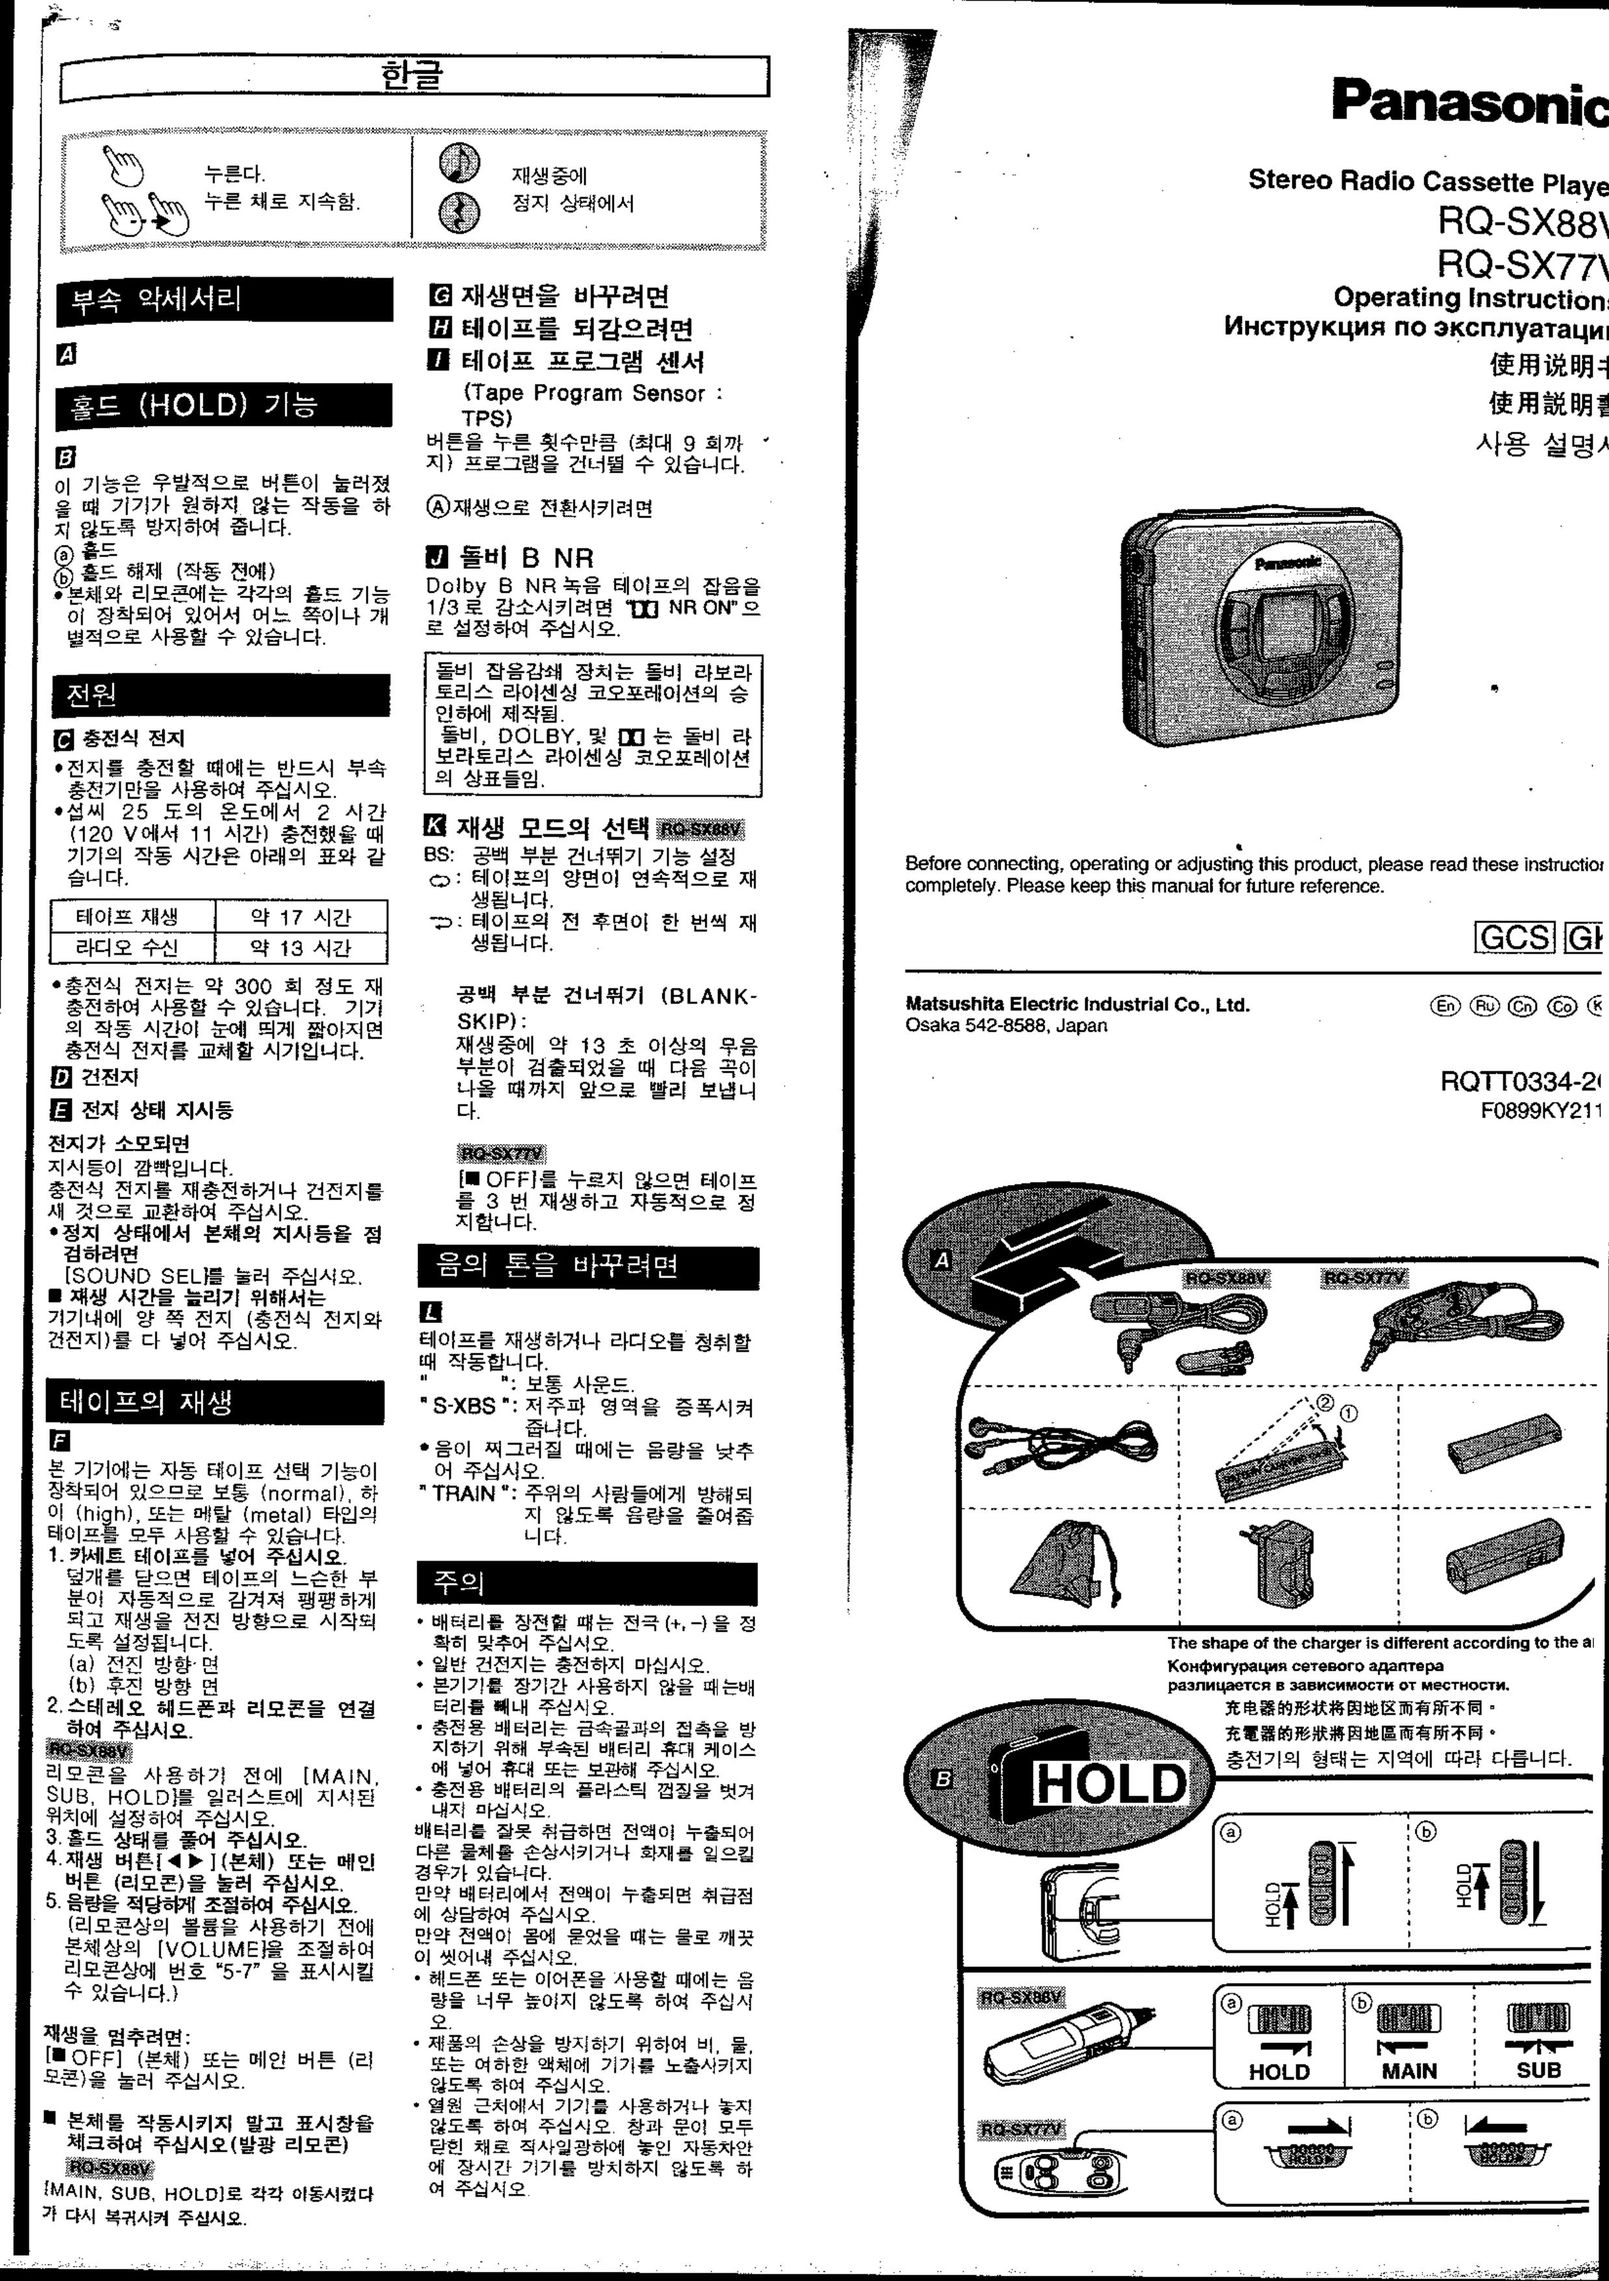 Panasonic RQ-SX88V Cassette Player User Manual